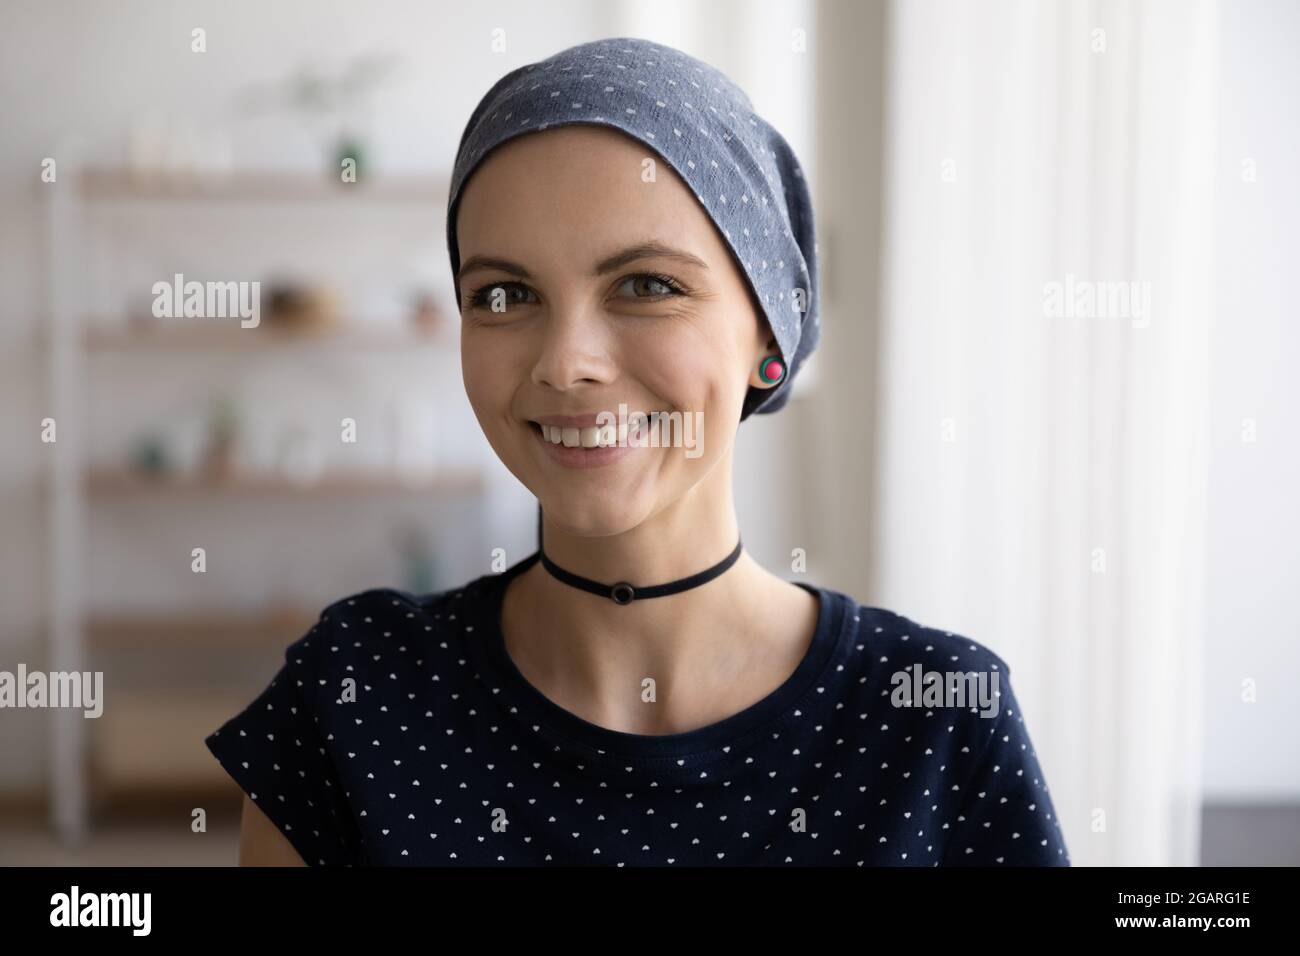 Porträt einer lächelnden Glatze mit Schal auf dem Kopf Stockfotografie -  Alamy